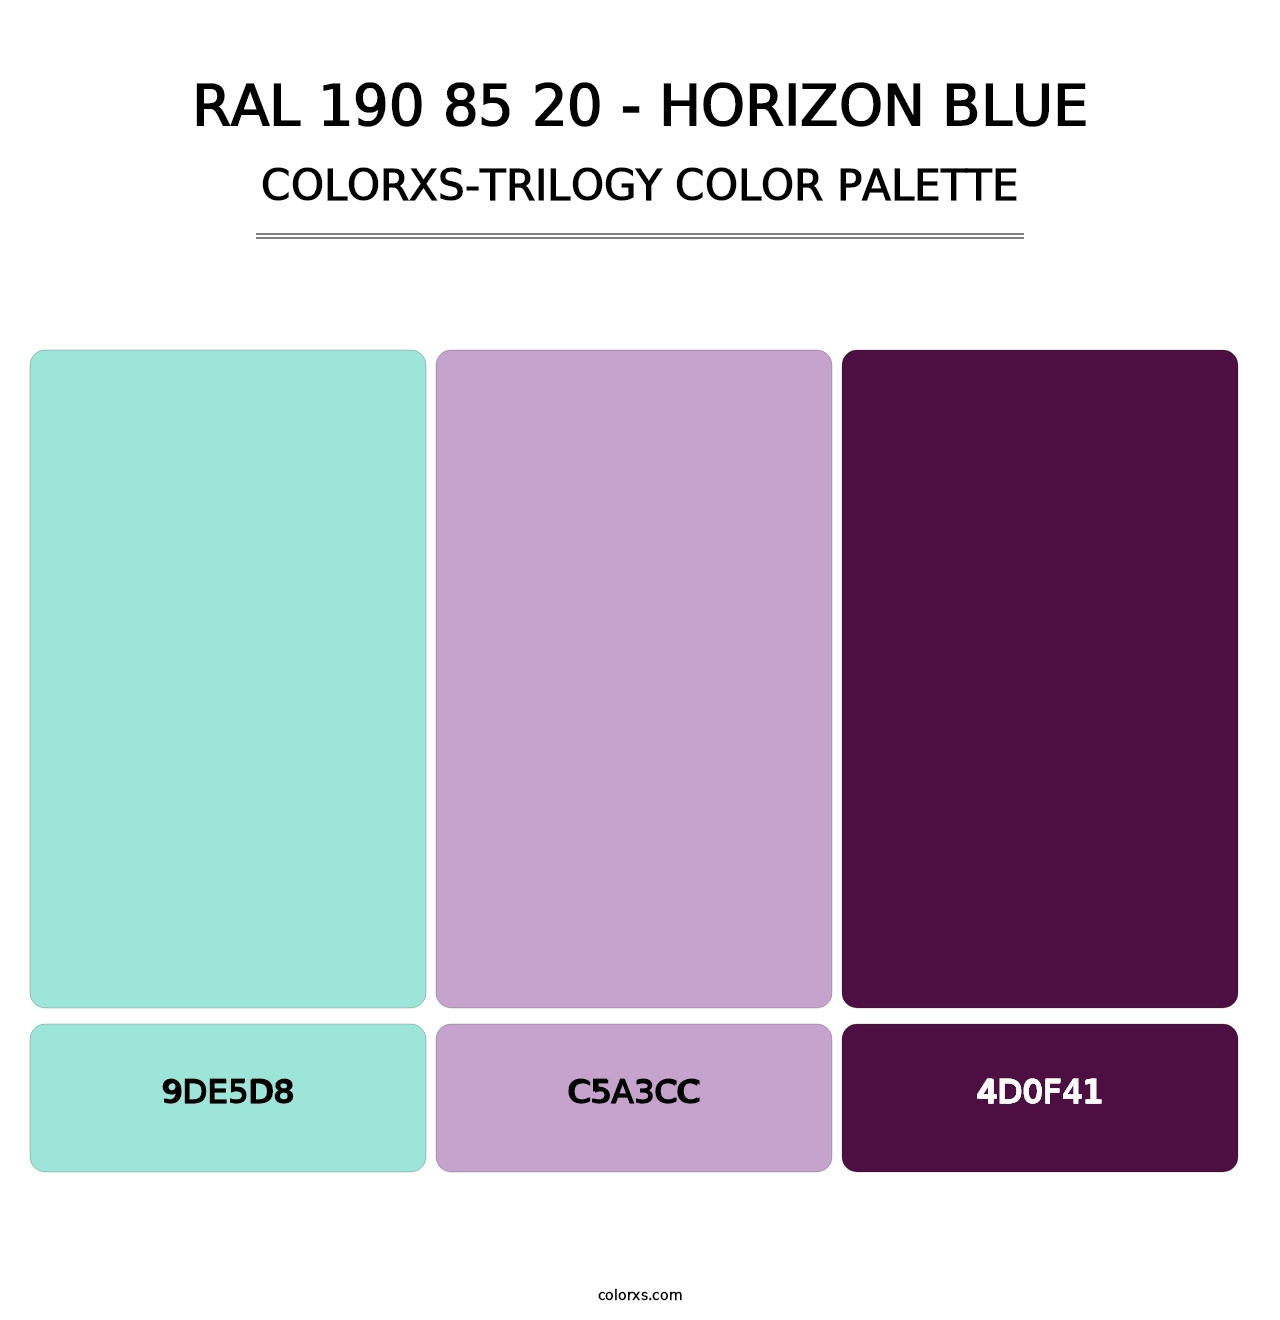 RAL 190 85 20 - Horizon Blue - Colorxs Trilogy Palette